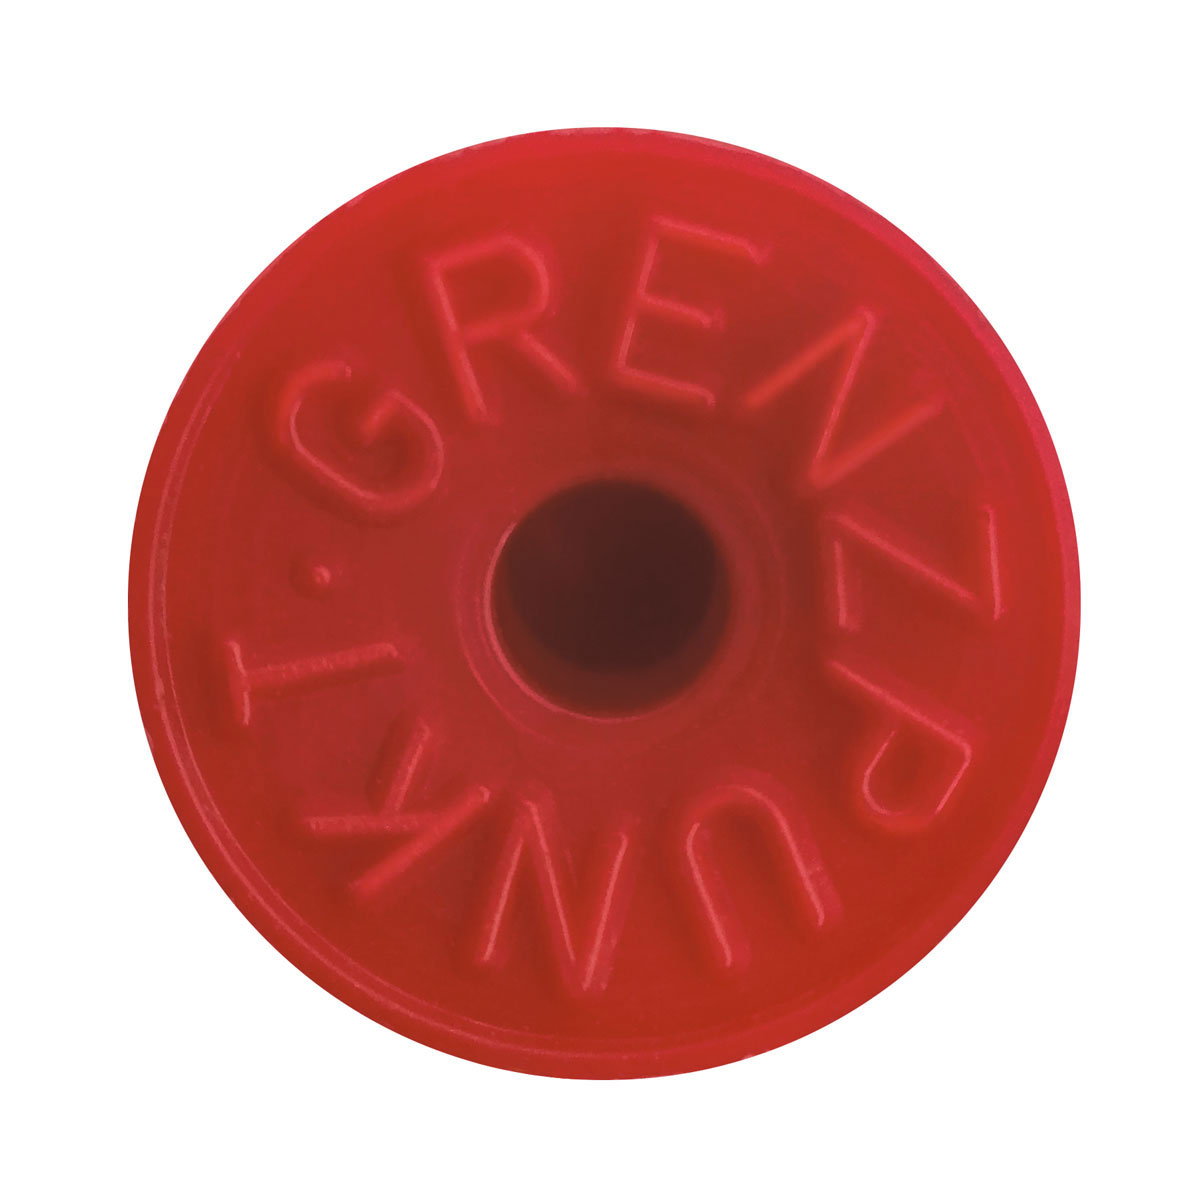 Grenzbolzen aus Kunststoff, Aufschrift "Grenzpunkt", Farbe: rot, 85 mm lang